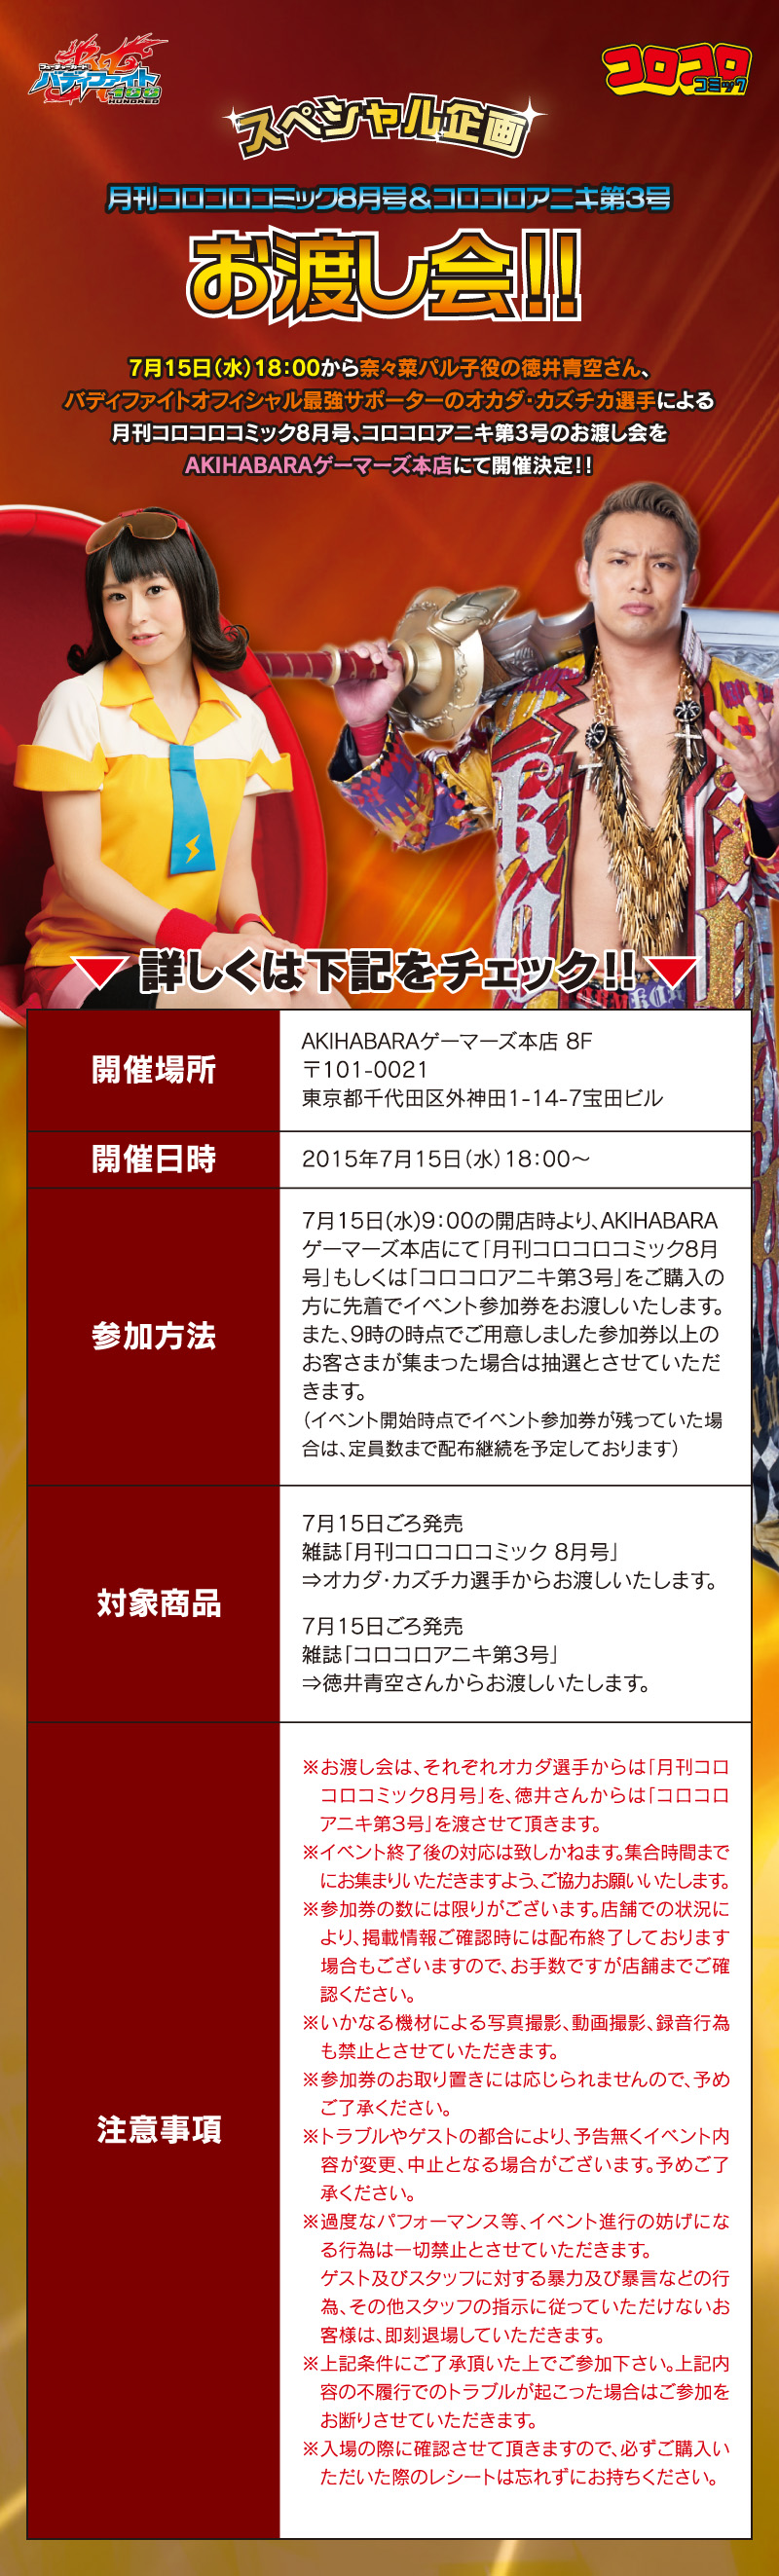 スペシャル企画 月刊コロコロコミック8月号 コロコロアニキ第3号 お渡し会 フューチャーカード バディファイト公式サイト